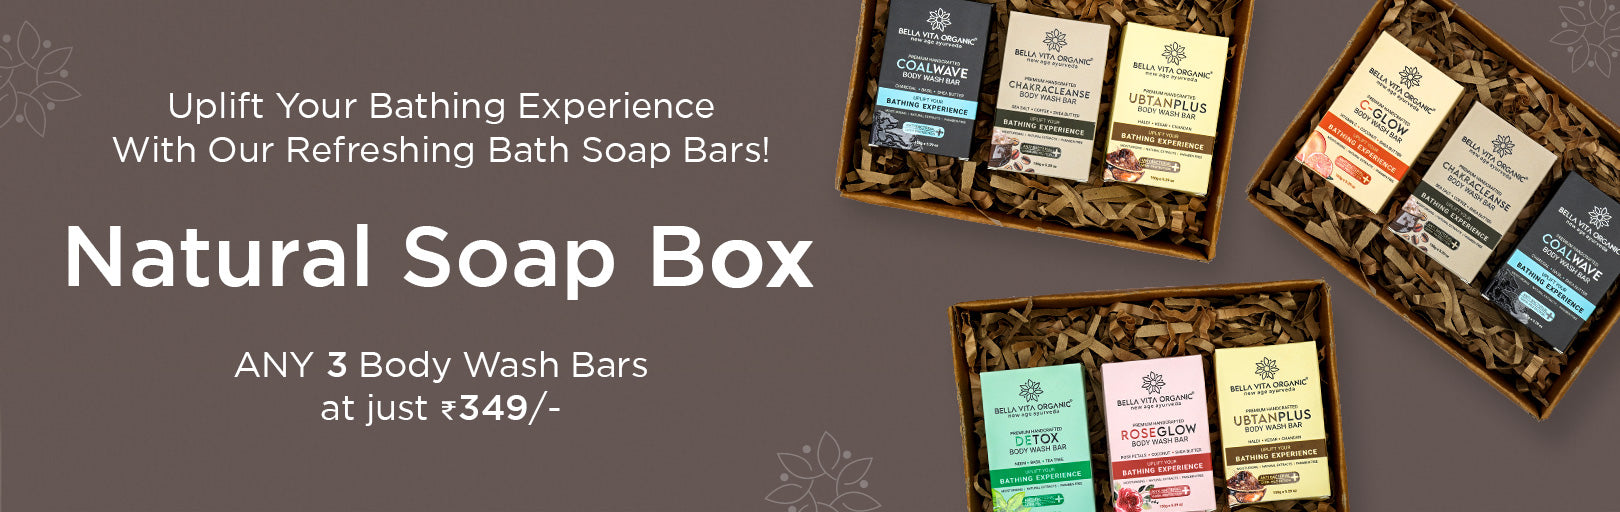 Natural Soap Box